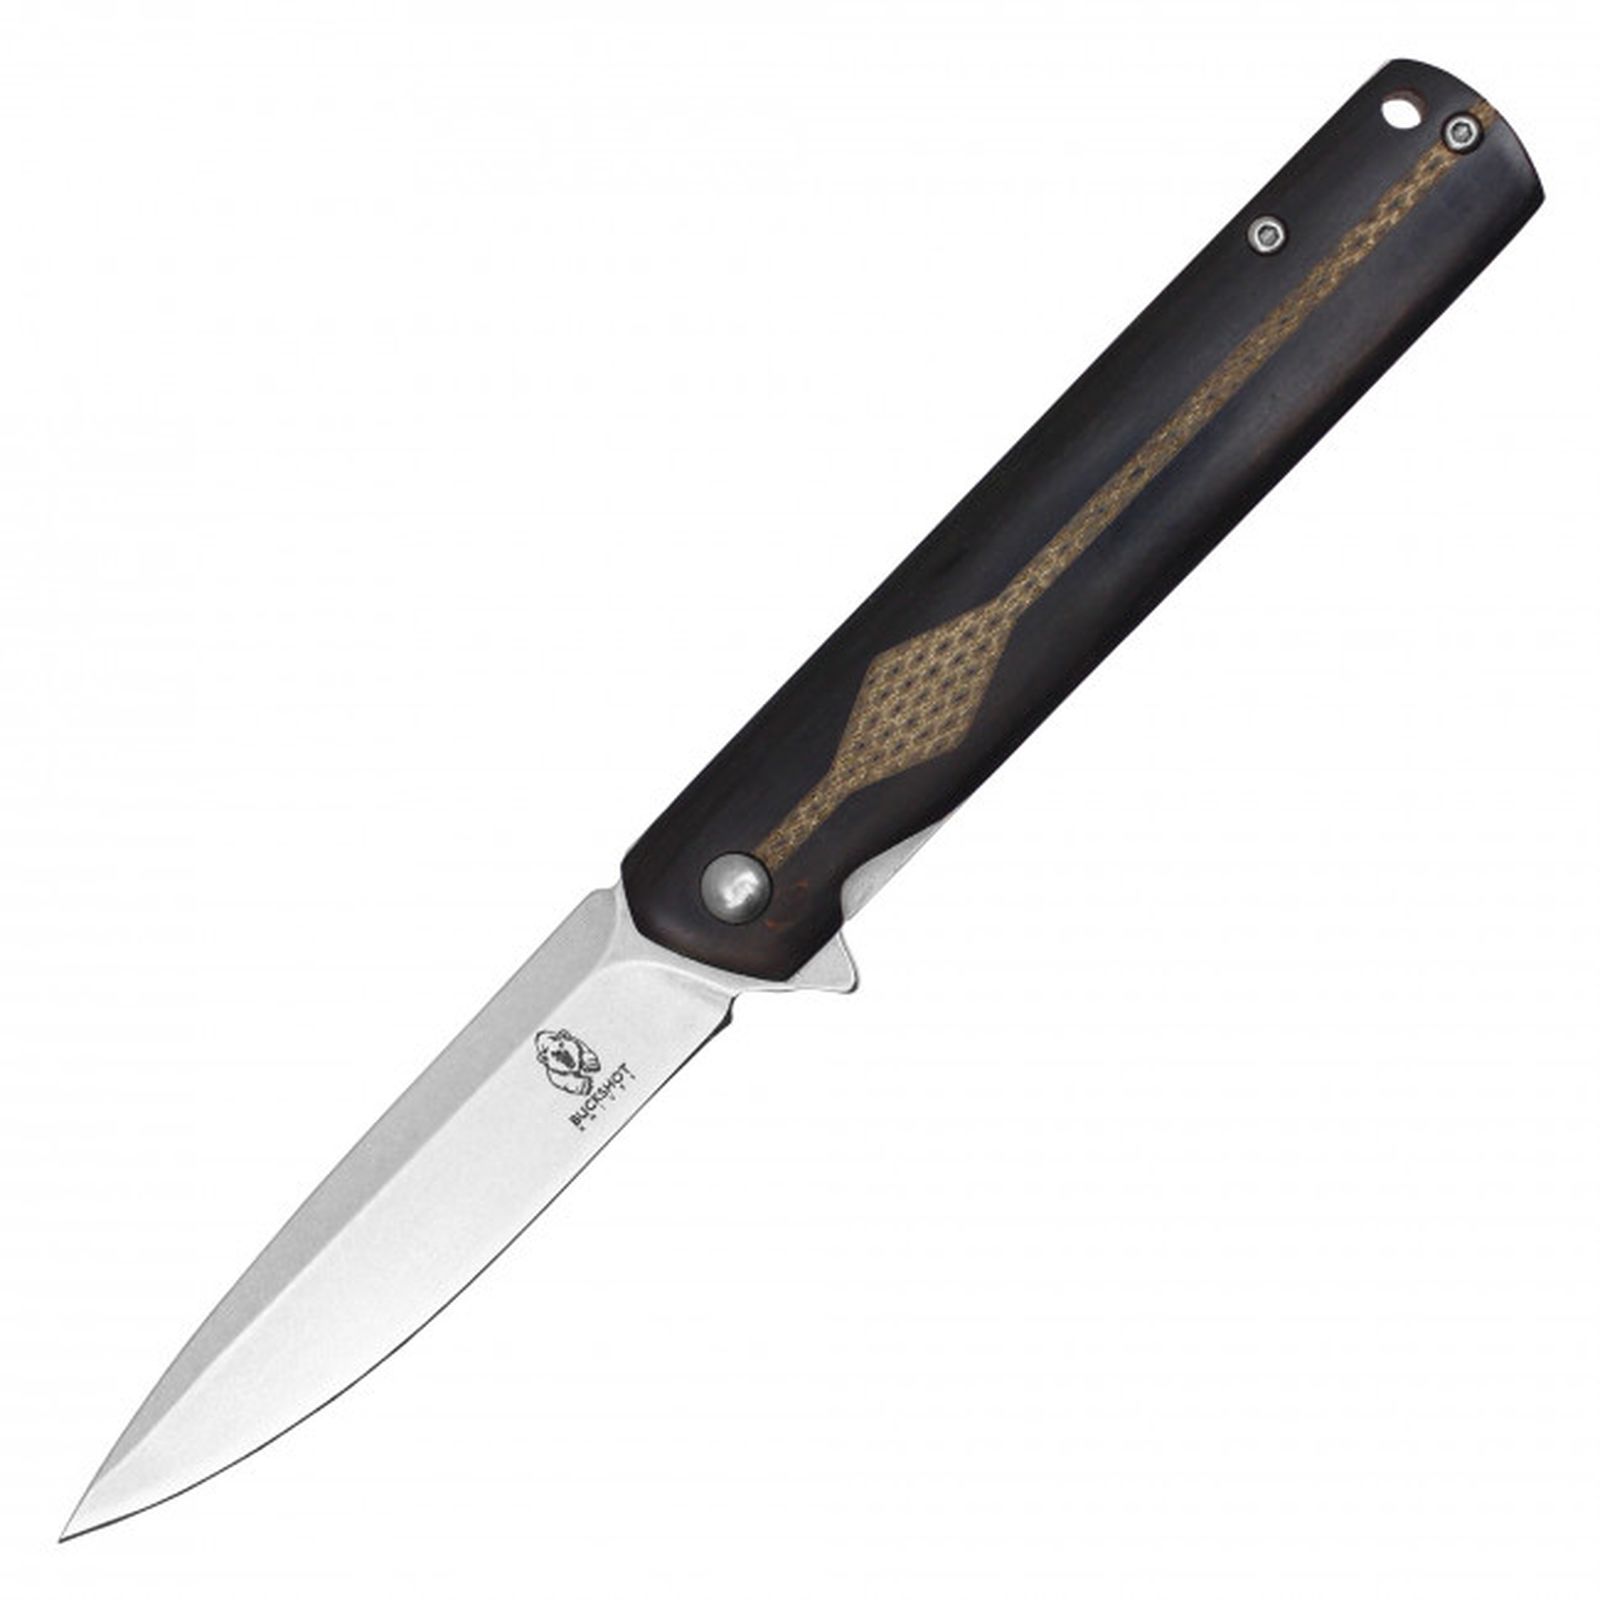 NEW Pocket Knife Buckshot Spring-Assist Folding Blade Pocket Clip - Black Wood